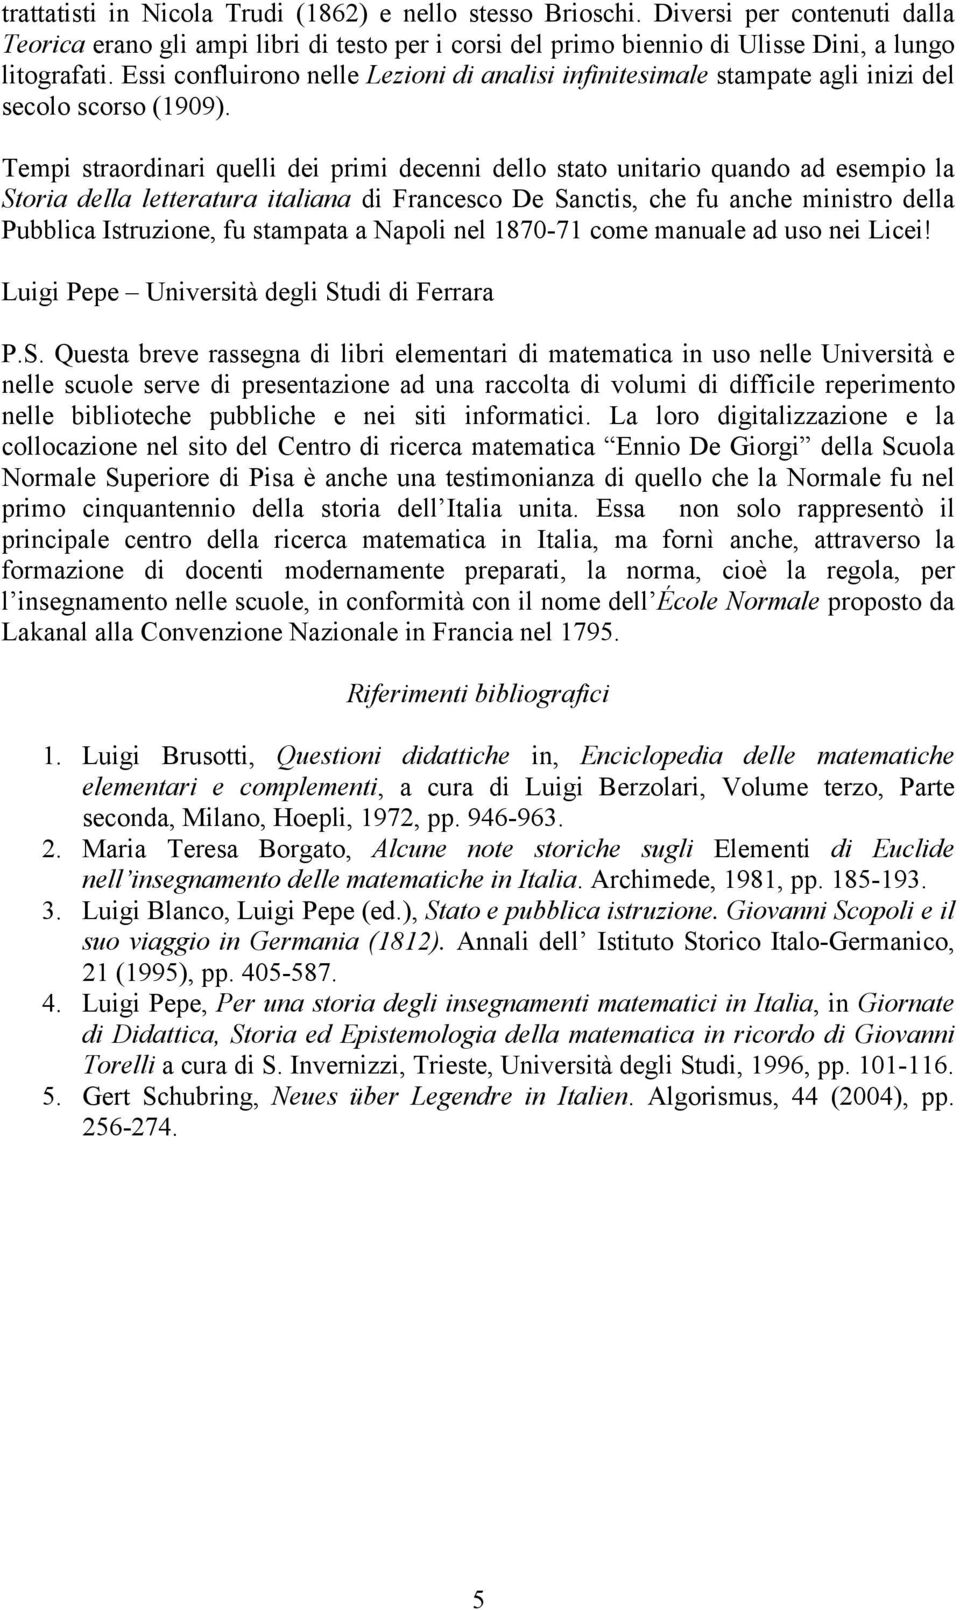 Tempi straordinari quelli dei primi decenni dello stato unitario quando ad esempio la Storia della letteratura italiana di Francesco De Sanctis, che fu anche ministro della Pubblica Istruzione, fu